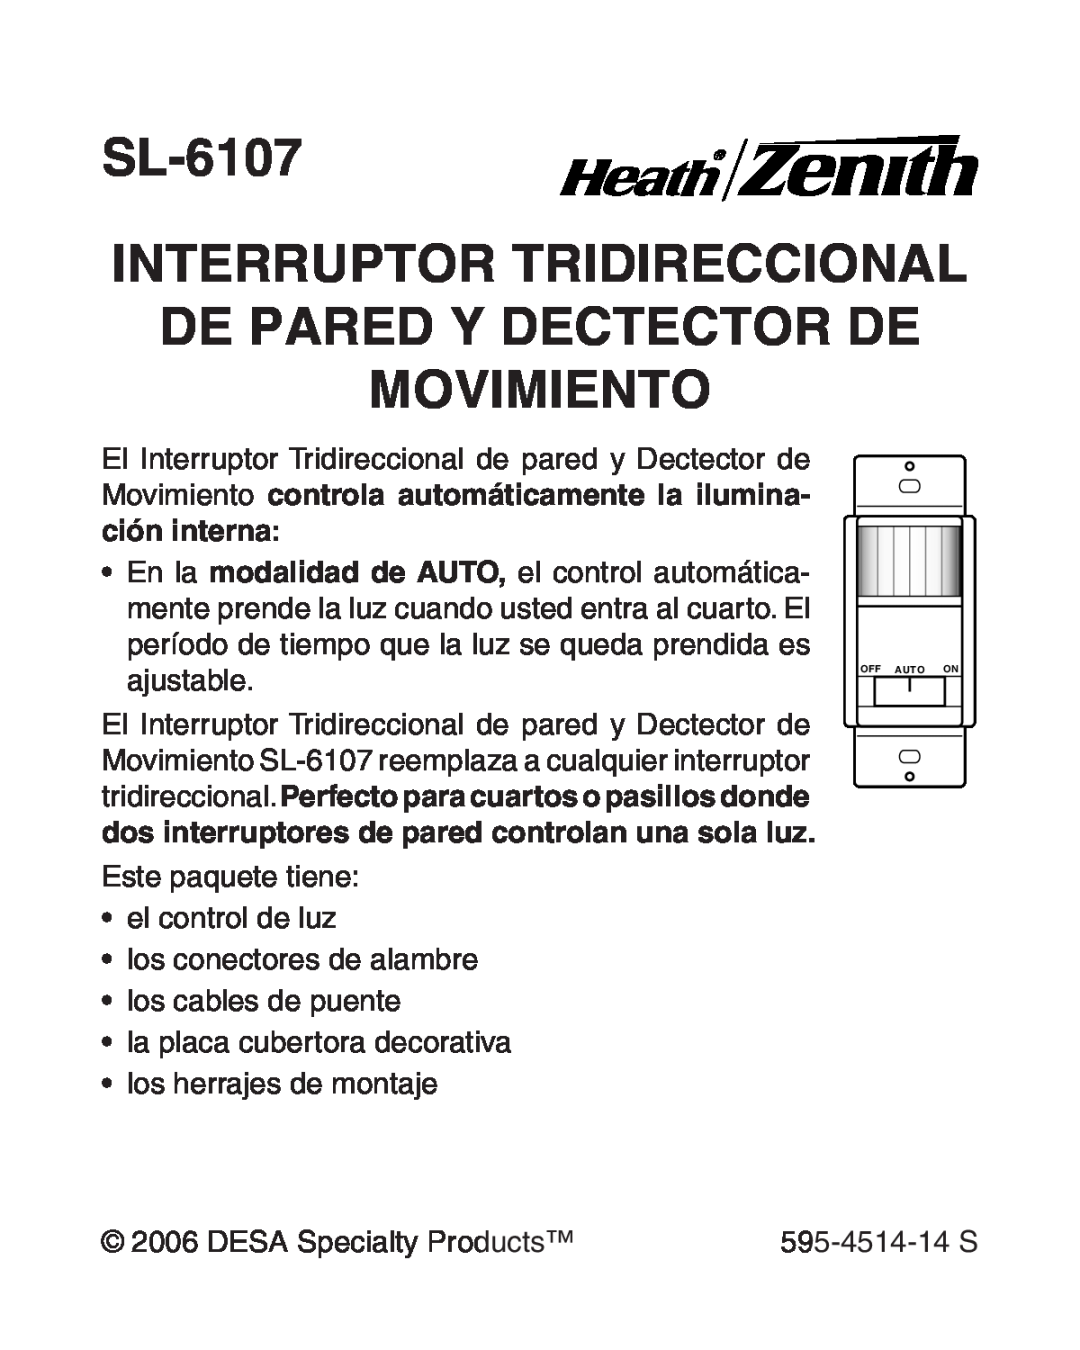 Heath Zenith manual SL-6107 Interruptor Tridireccional, de pared y Dectector de Movimiento 